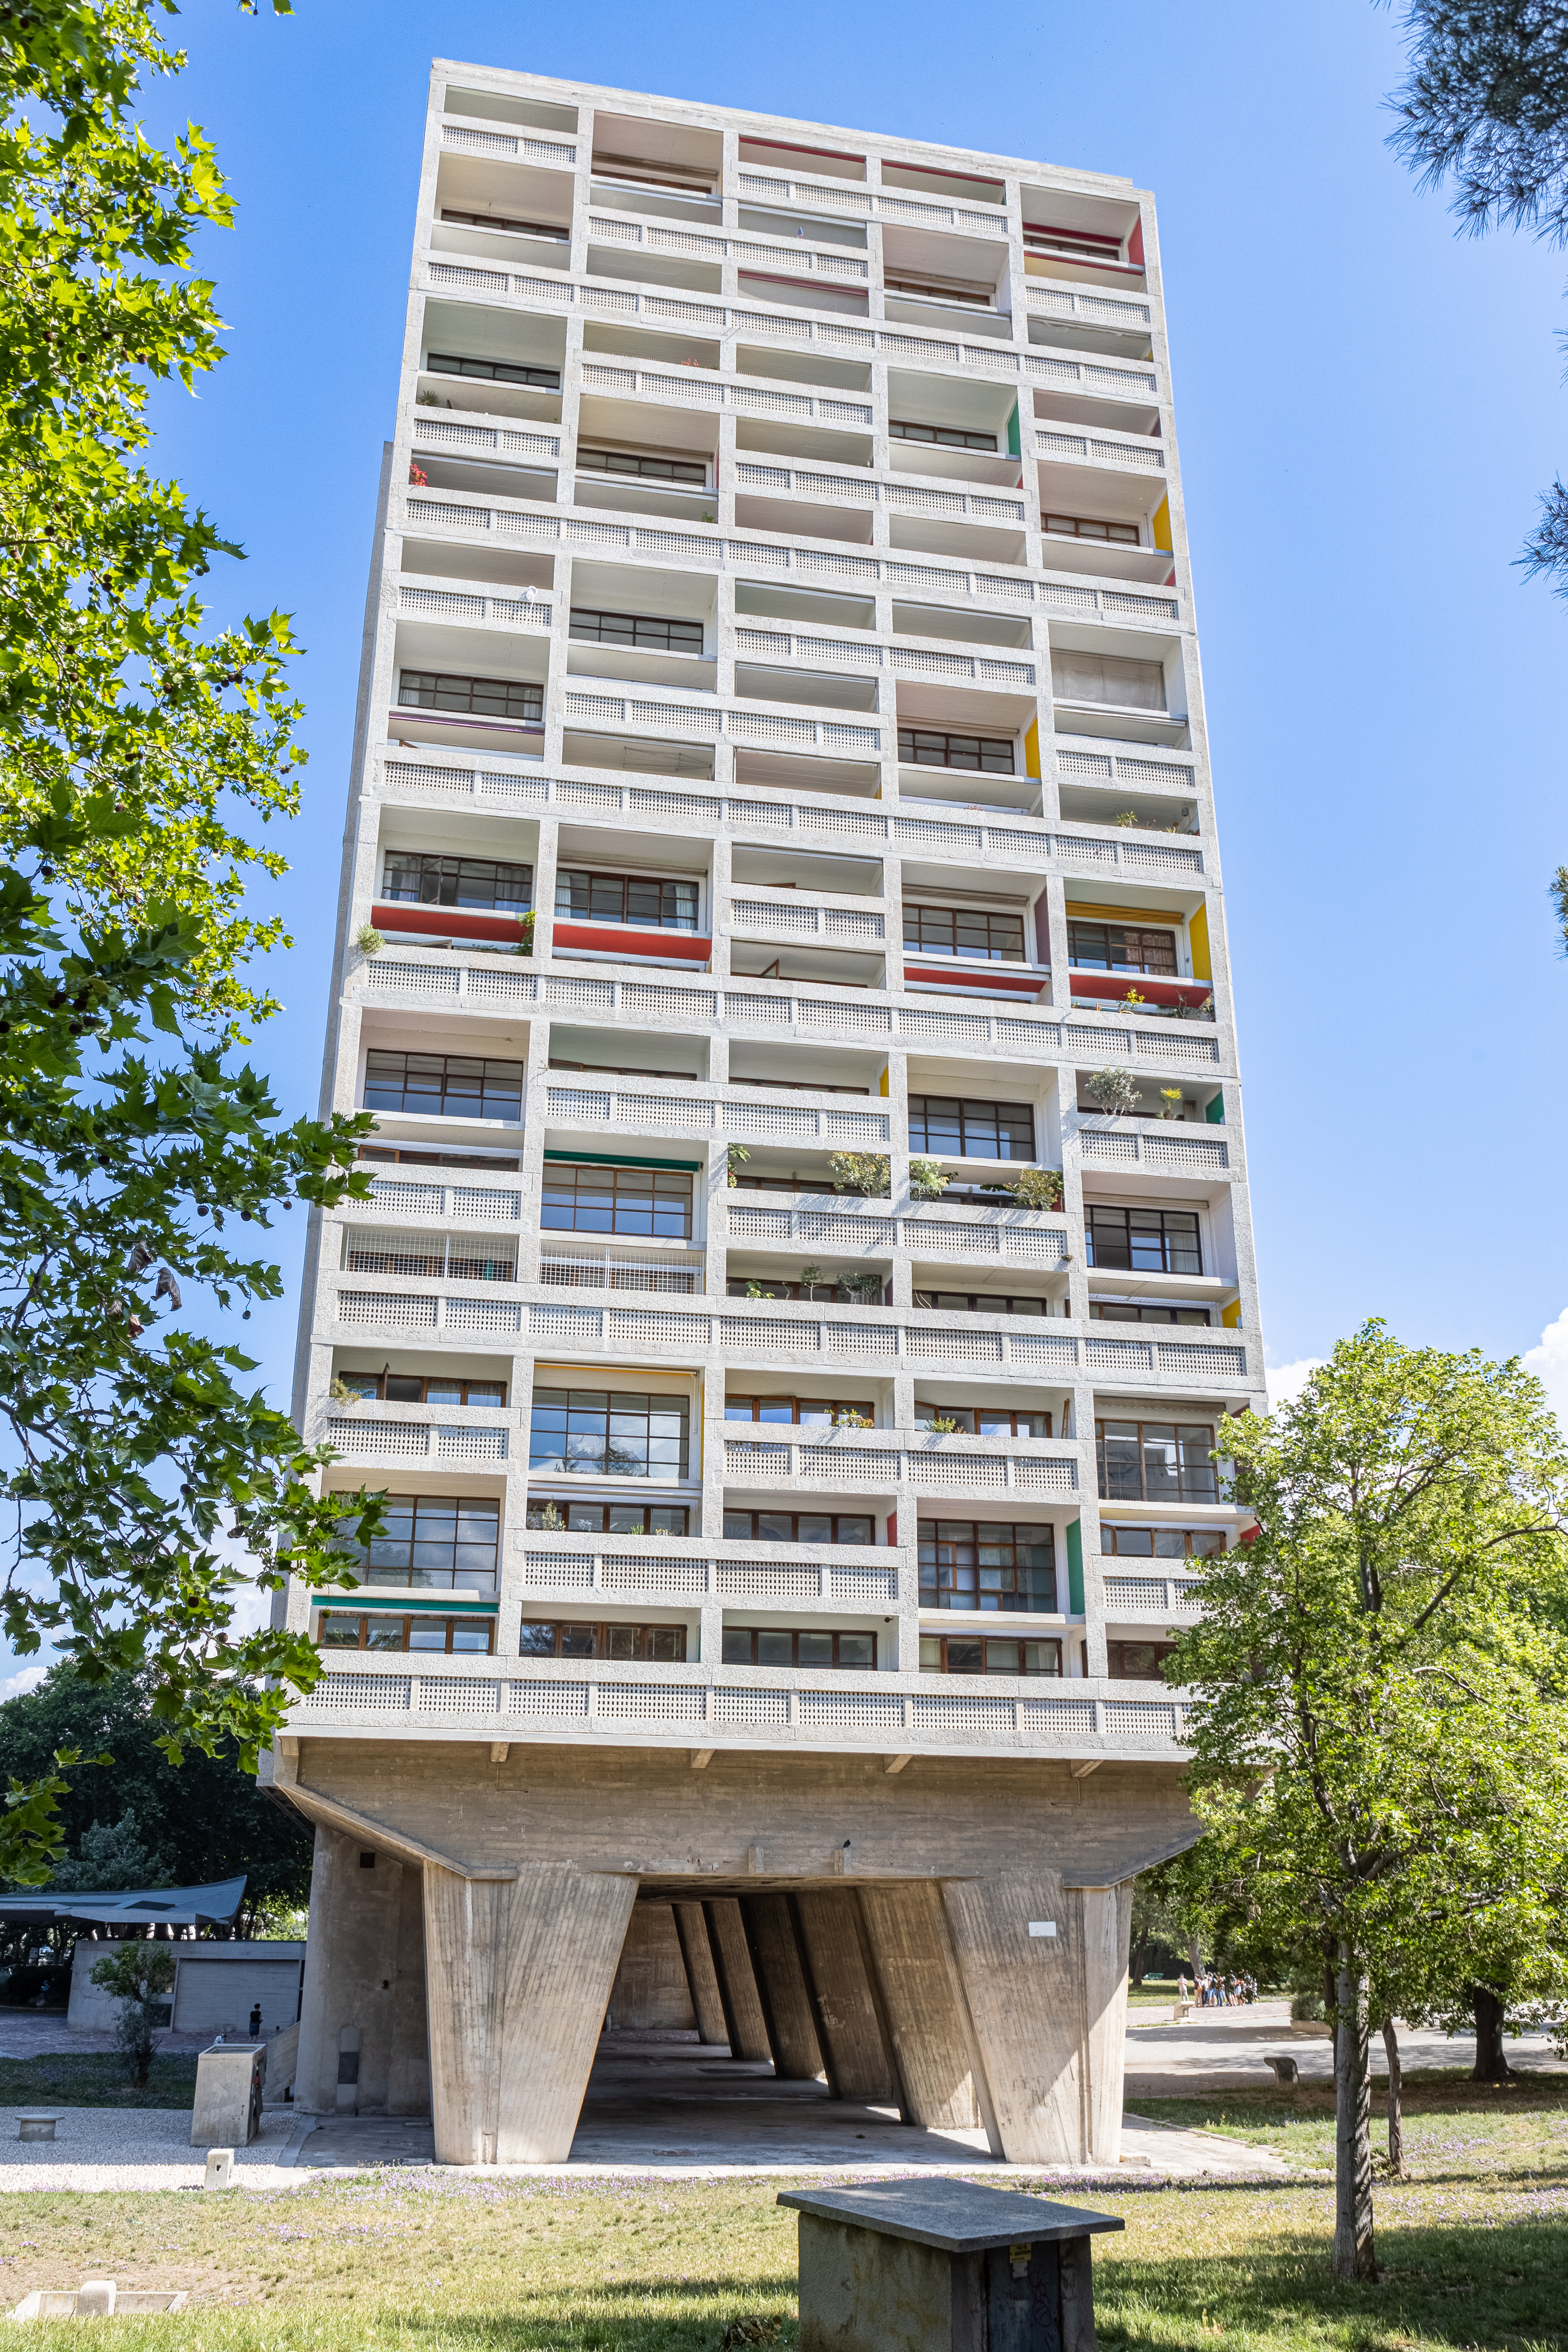 photographe d'architecture, vue d'ensemble de la cité radieuse de Le Corbusier par le photographe Christophe Levet